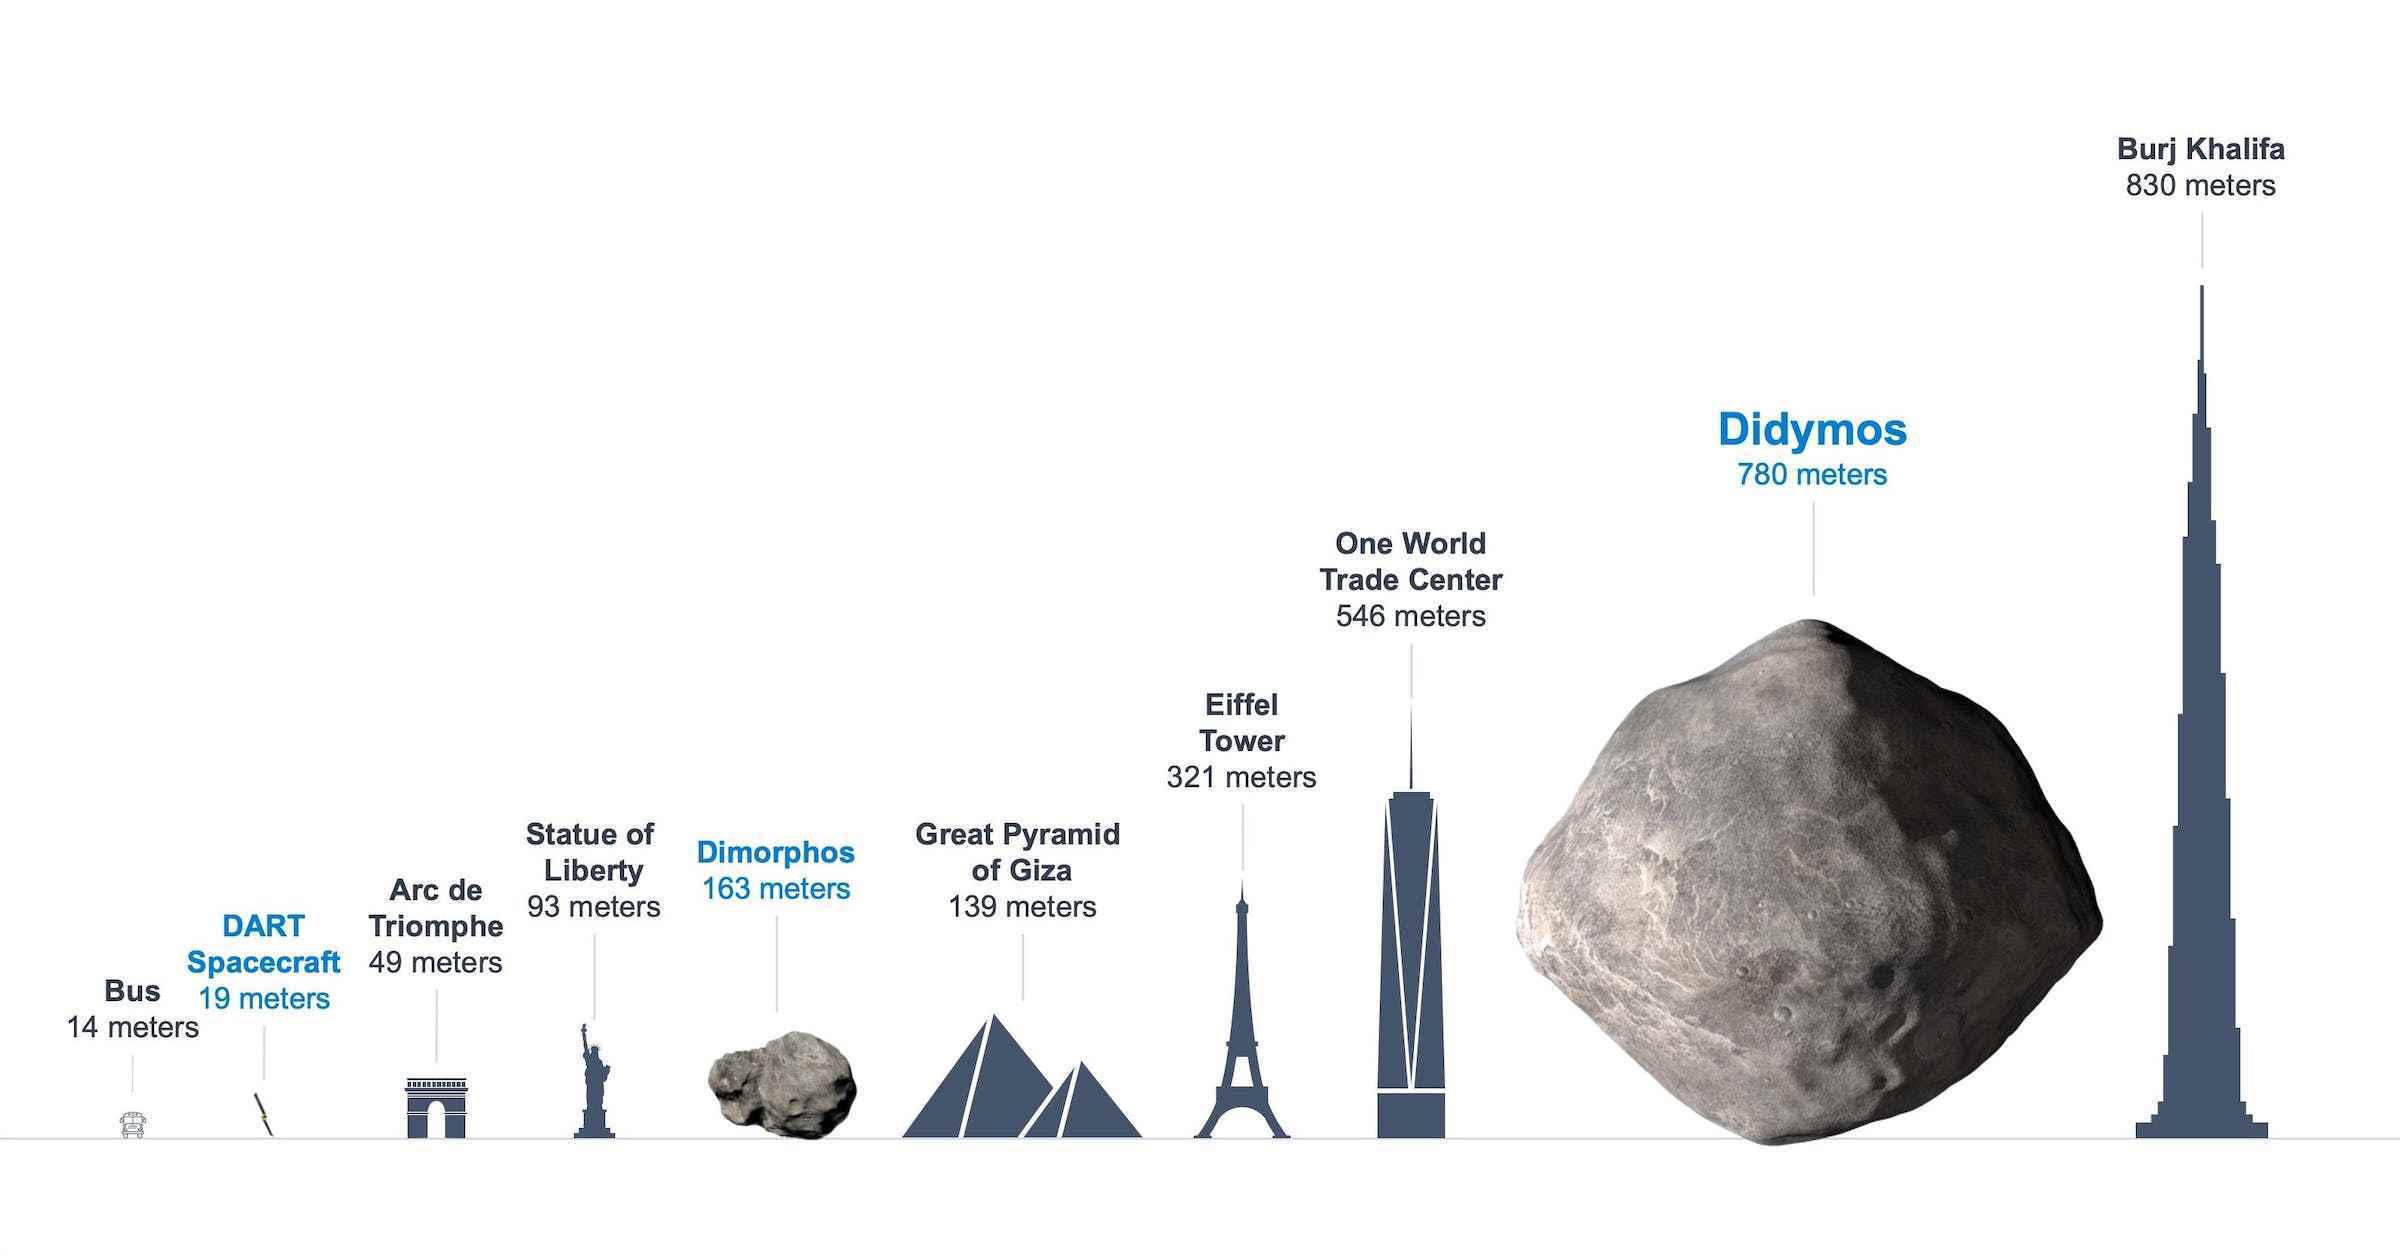 Resimli nesnelerin göreceli boyutlarını gösteren bir infografik.  Solda üzerinde 14 metre yazan etiketli bir otobüs, yanında 19 metrede DART uzay aracı var.  DART'ın sağında Arc de Triomphe (49 metre), Özgürlük Anıtı (93 m) ve Dimorphos (163 metre) bulunur.  Bunun sağında piramitler (139 metre), Eyfel Kulesi (321 metre), One World Trade Center (546 metre), Didymos (780 metre) ve Burj Khalifa (830 metre) yer alıyor.